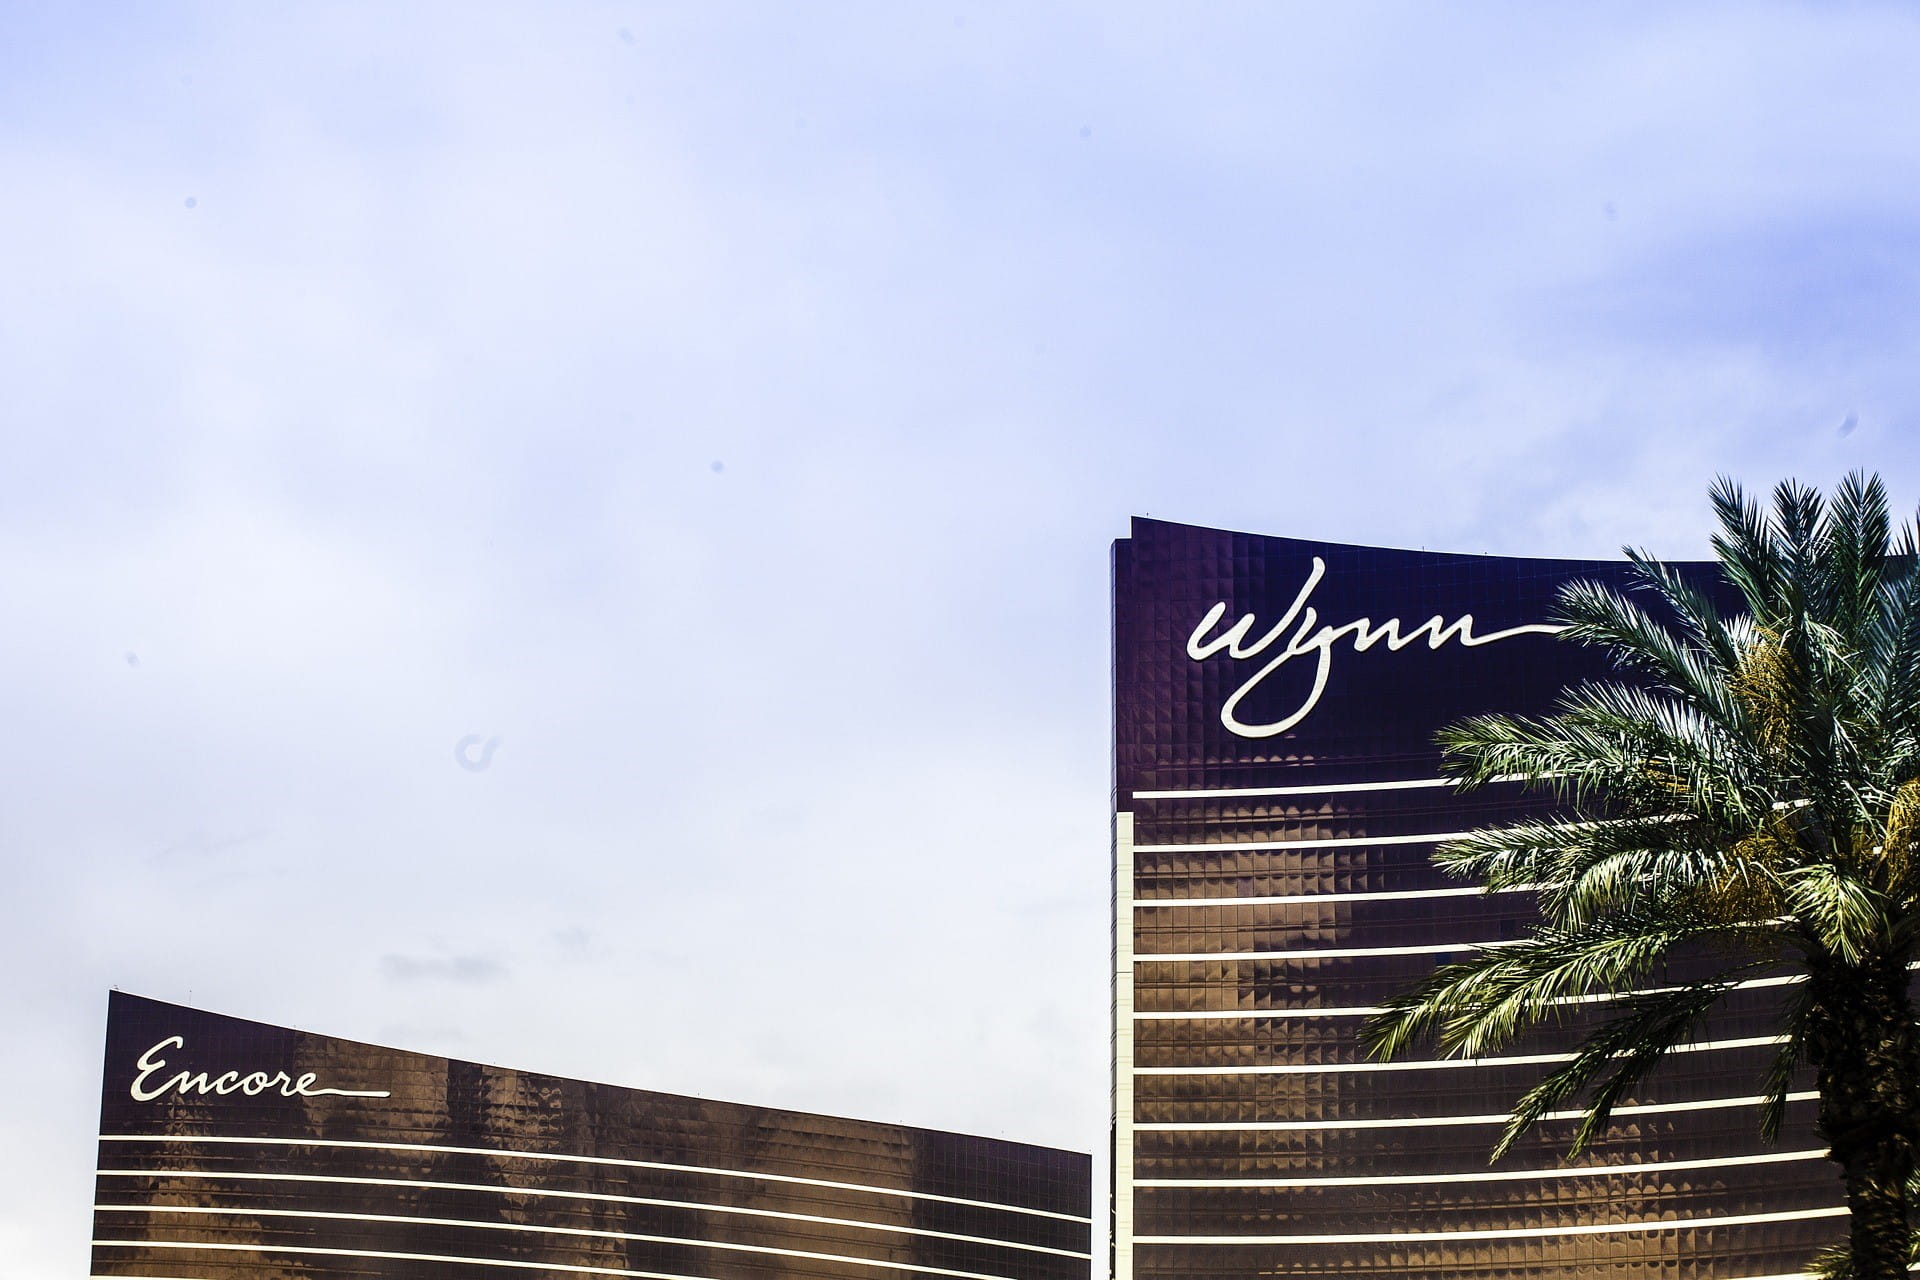 Wynn Resort in Las Vegas.